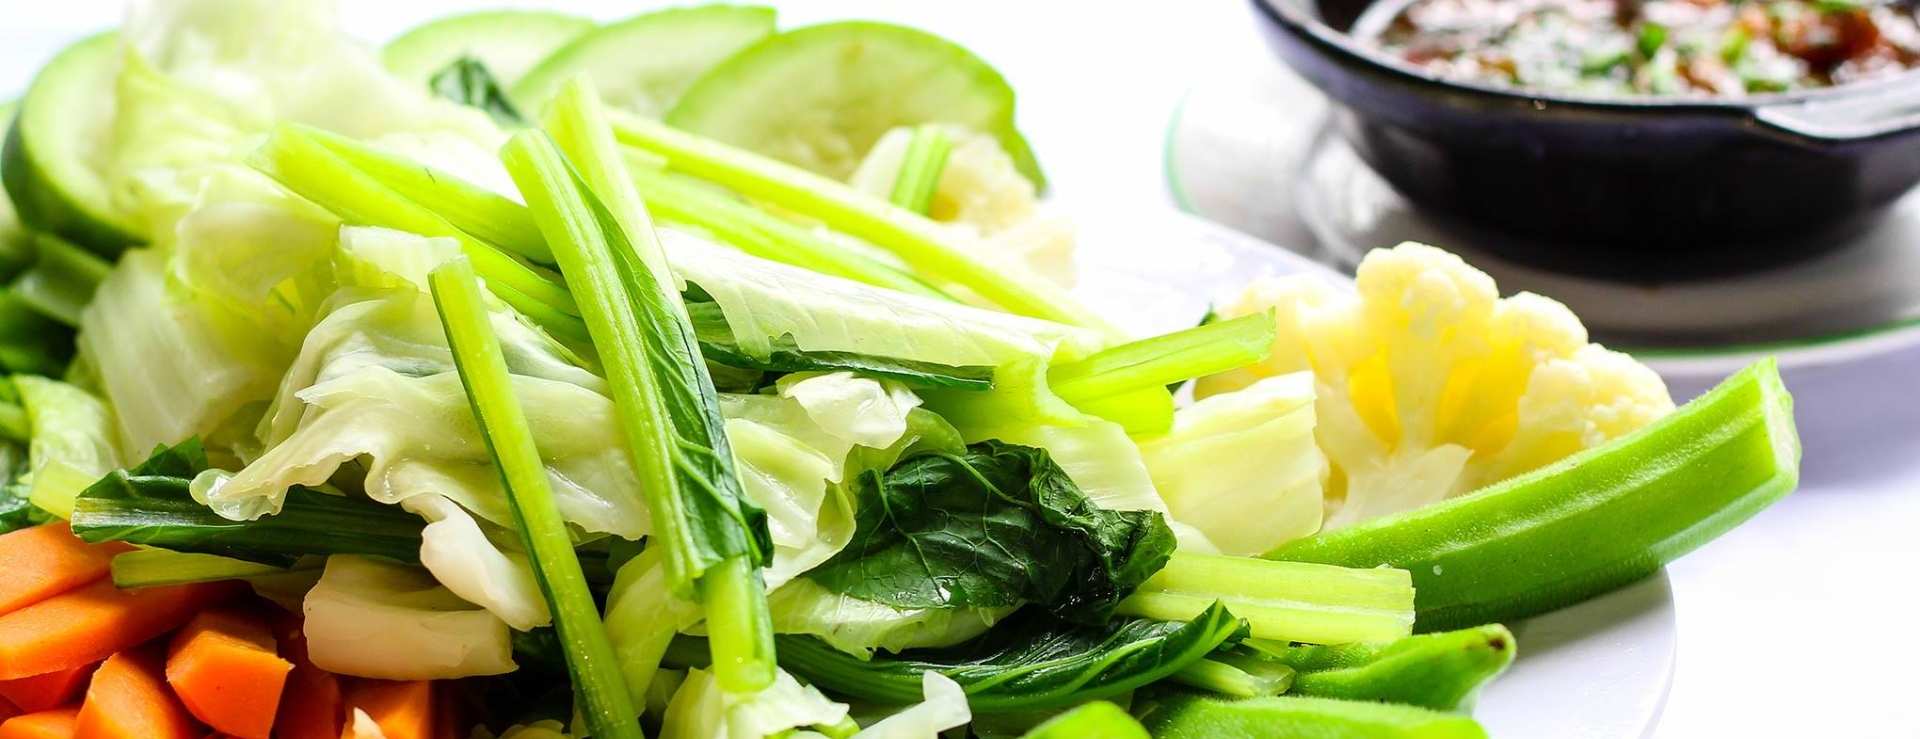 Rau là nguồn thực phẩm xanh trong bữa ăn hằng ngày